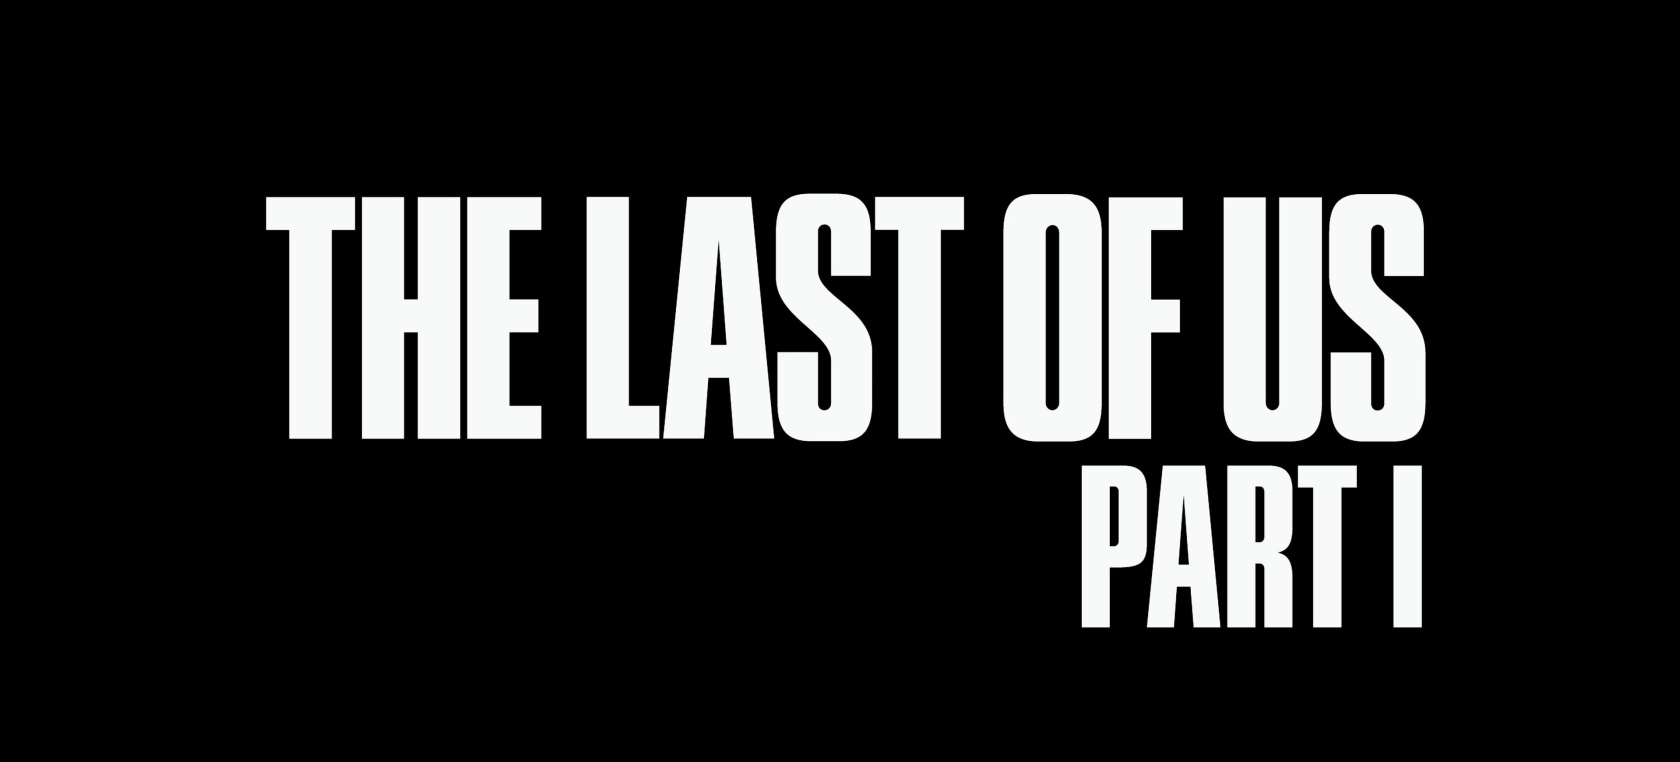 Naughty Dog anuncia la actualización v1.0.2.0 de The Last of Us Part 1